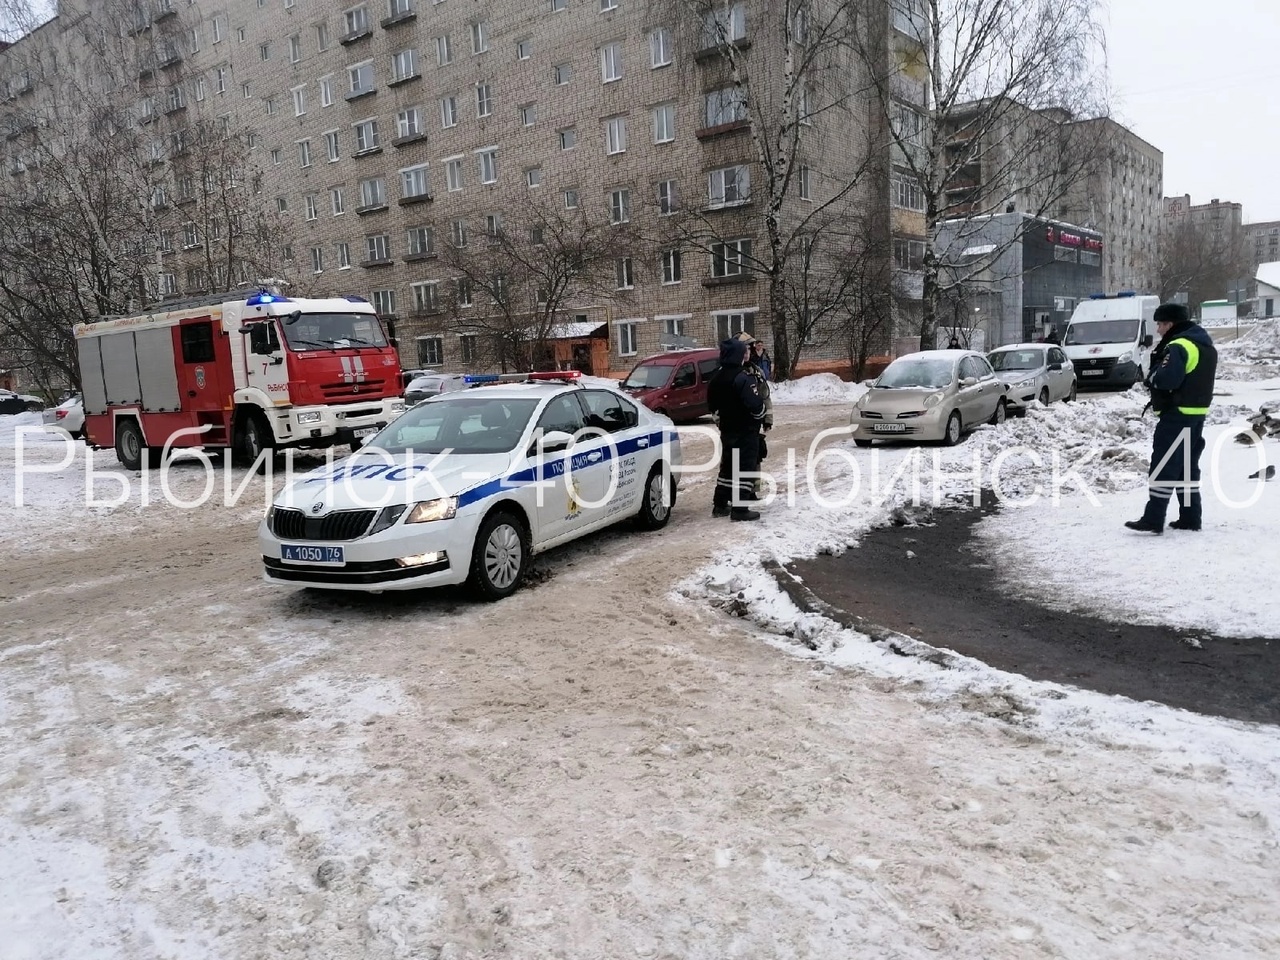 В Рыбинске массово эвакуируют людей из администрации, больницы, детсадов из-за сообщений о минировании